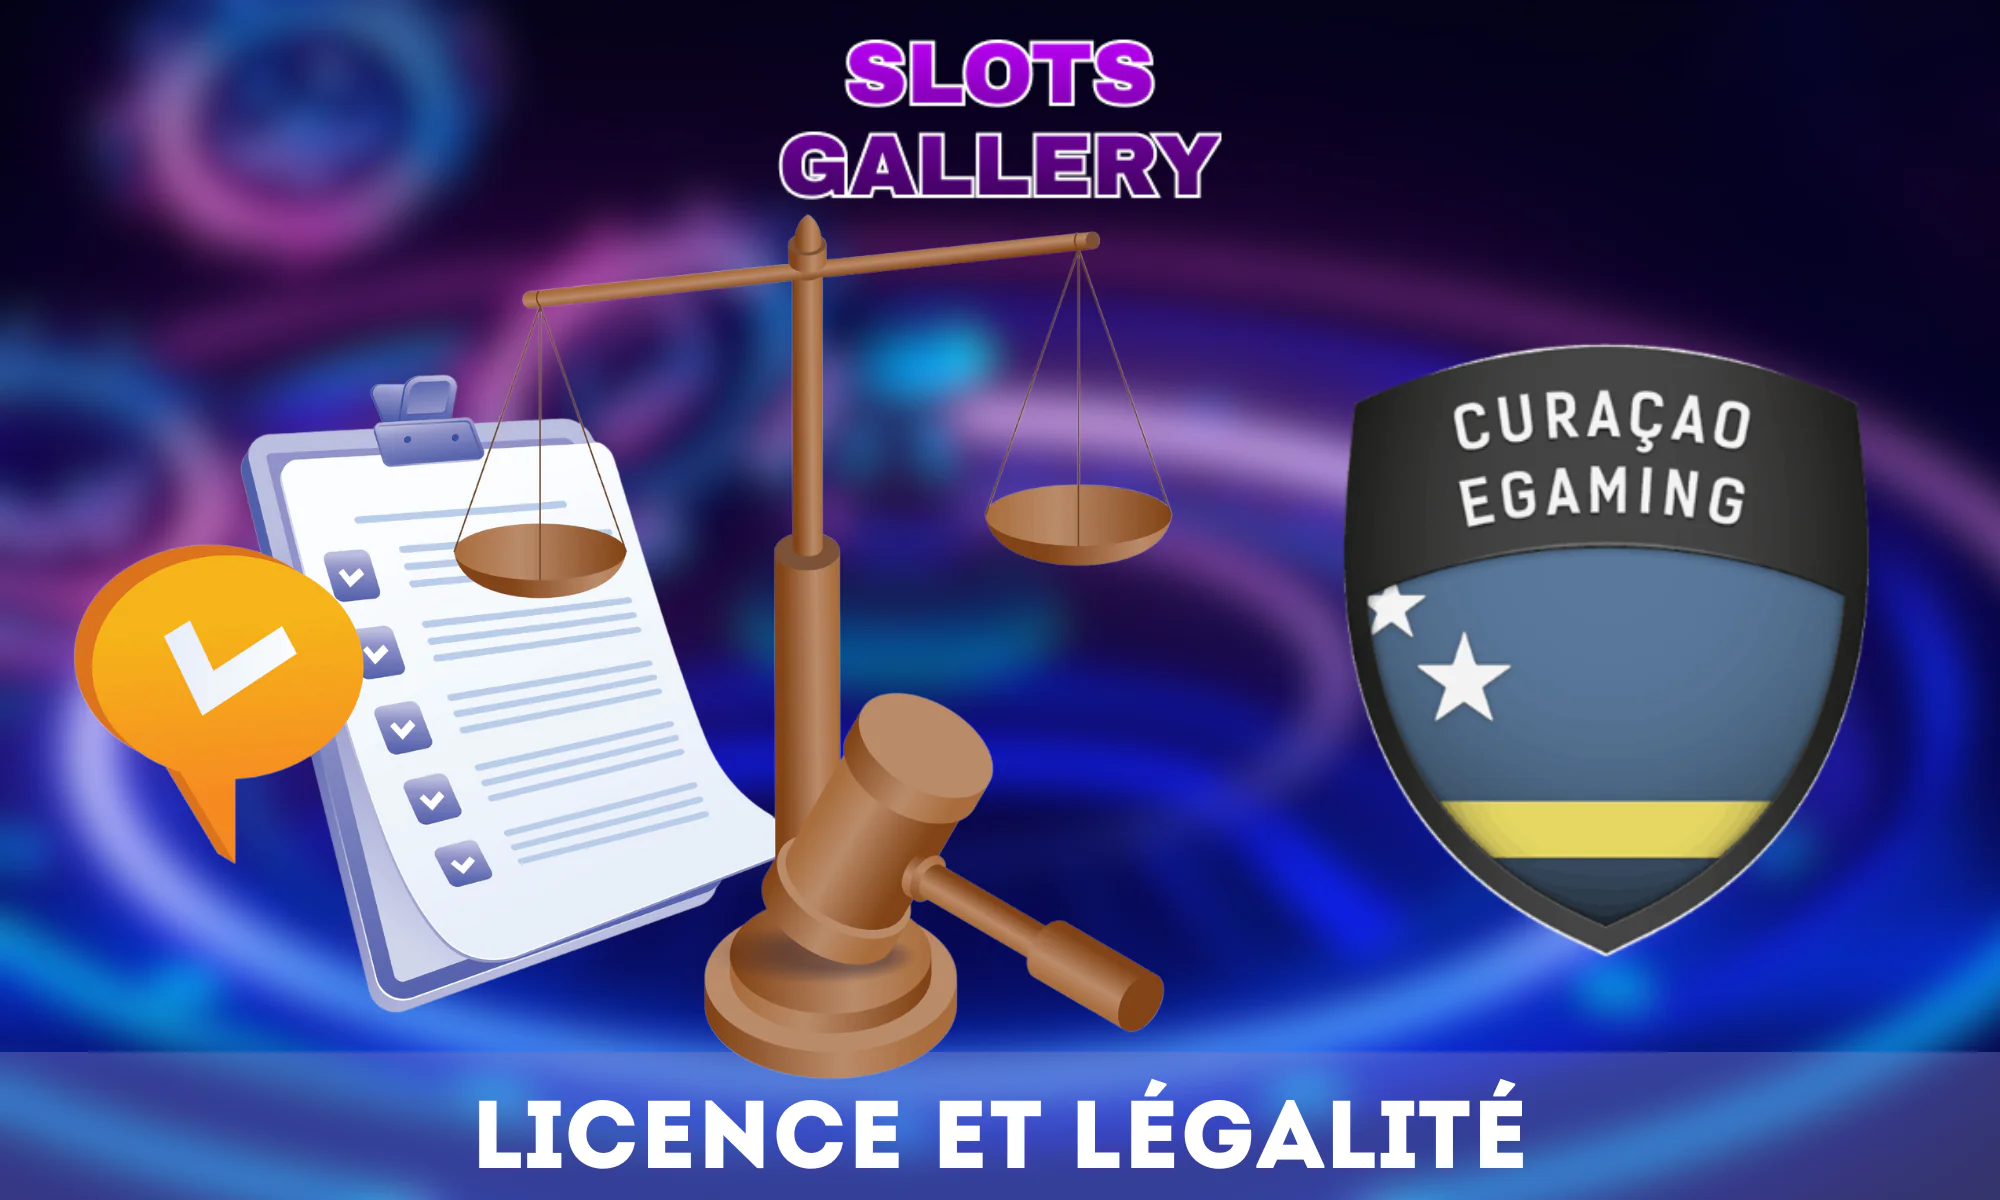 Le casino Slots Gallery possède une licence officielle et est responsable de la protection des données des utilisateurs.